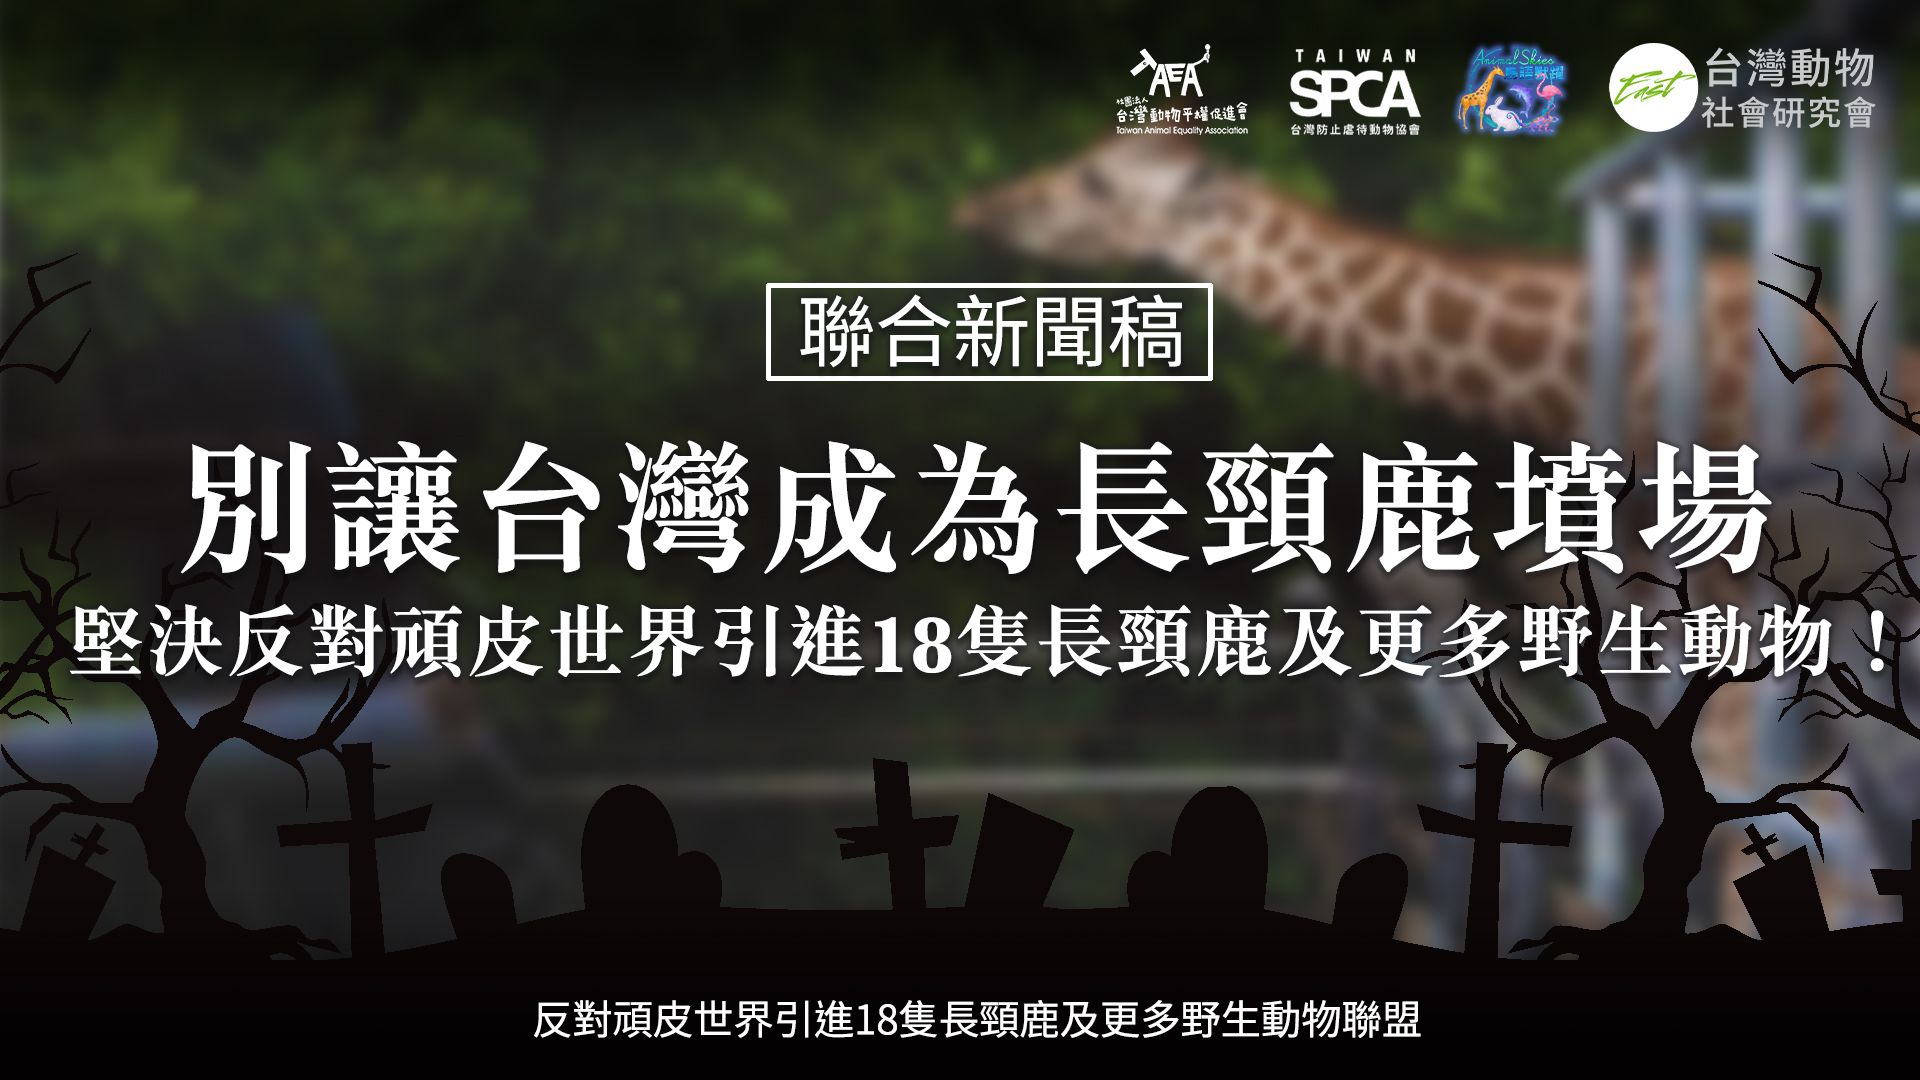 別讓台灣成為長頸鹿墳場｜
堅決反對頑皮世界引進18隻長頸鹿及更多野生動物！